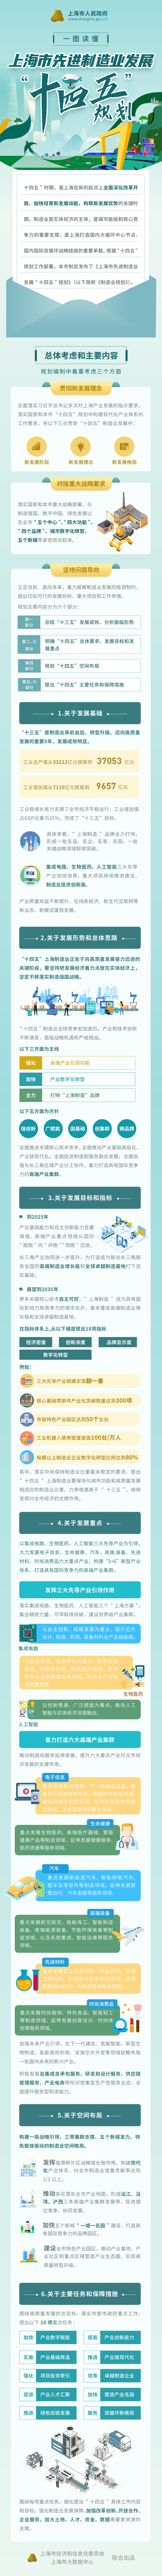 一图读懂《上海市先进制造业“十四五”规划》.png